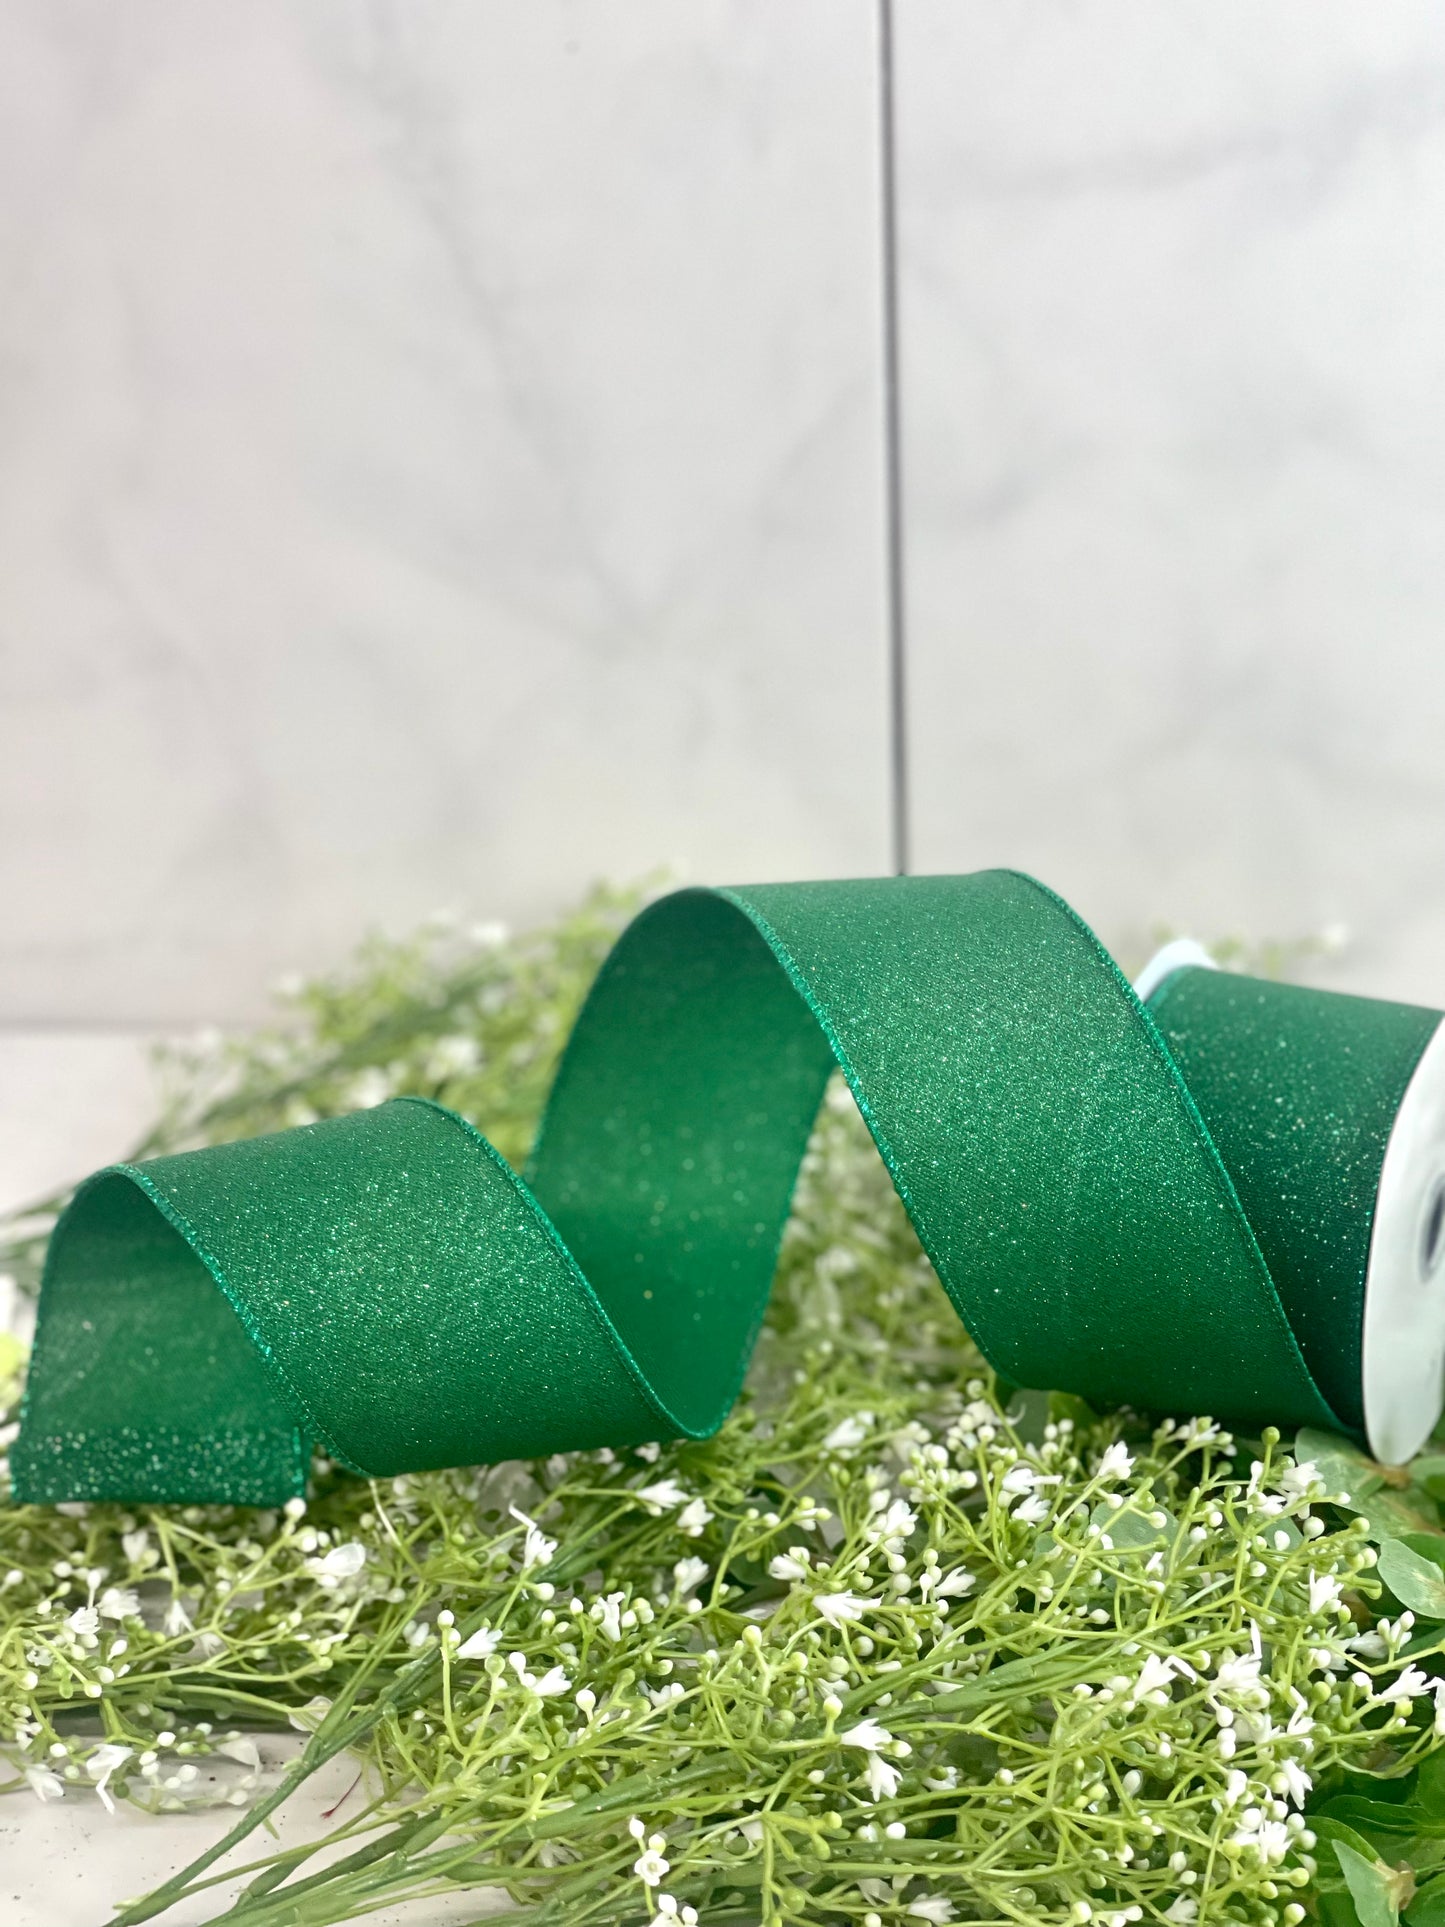 Emerald Green Ribbon - 2.5 x 10 Yards